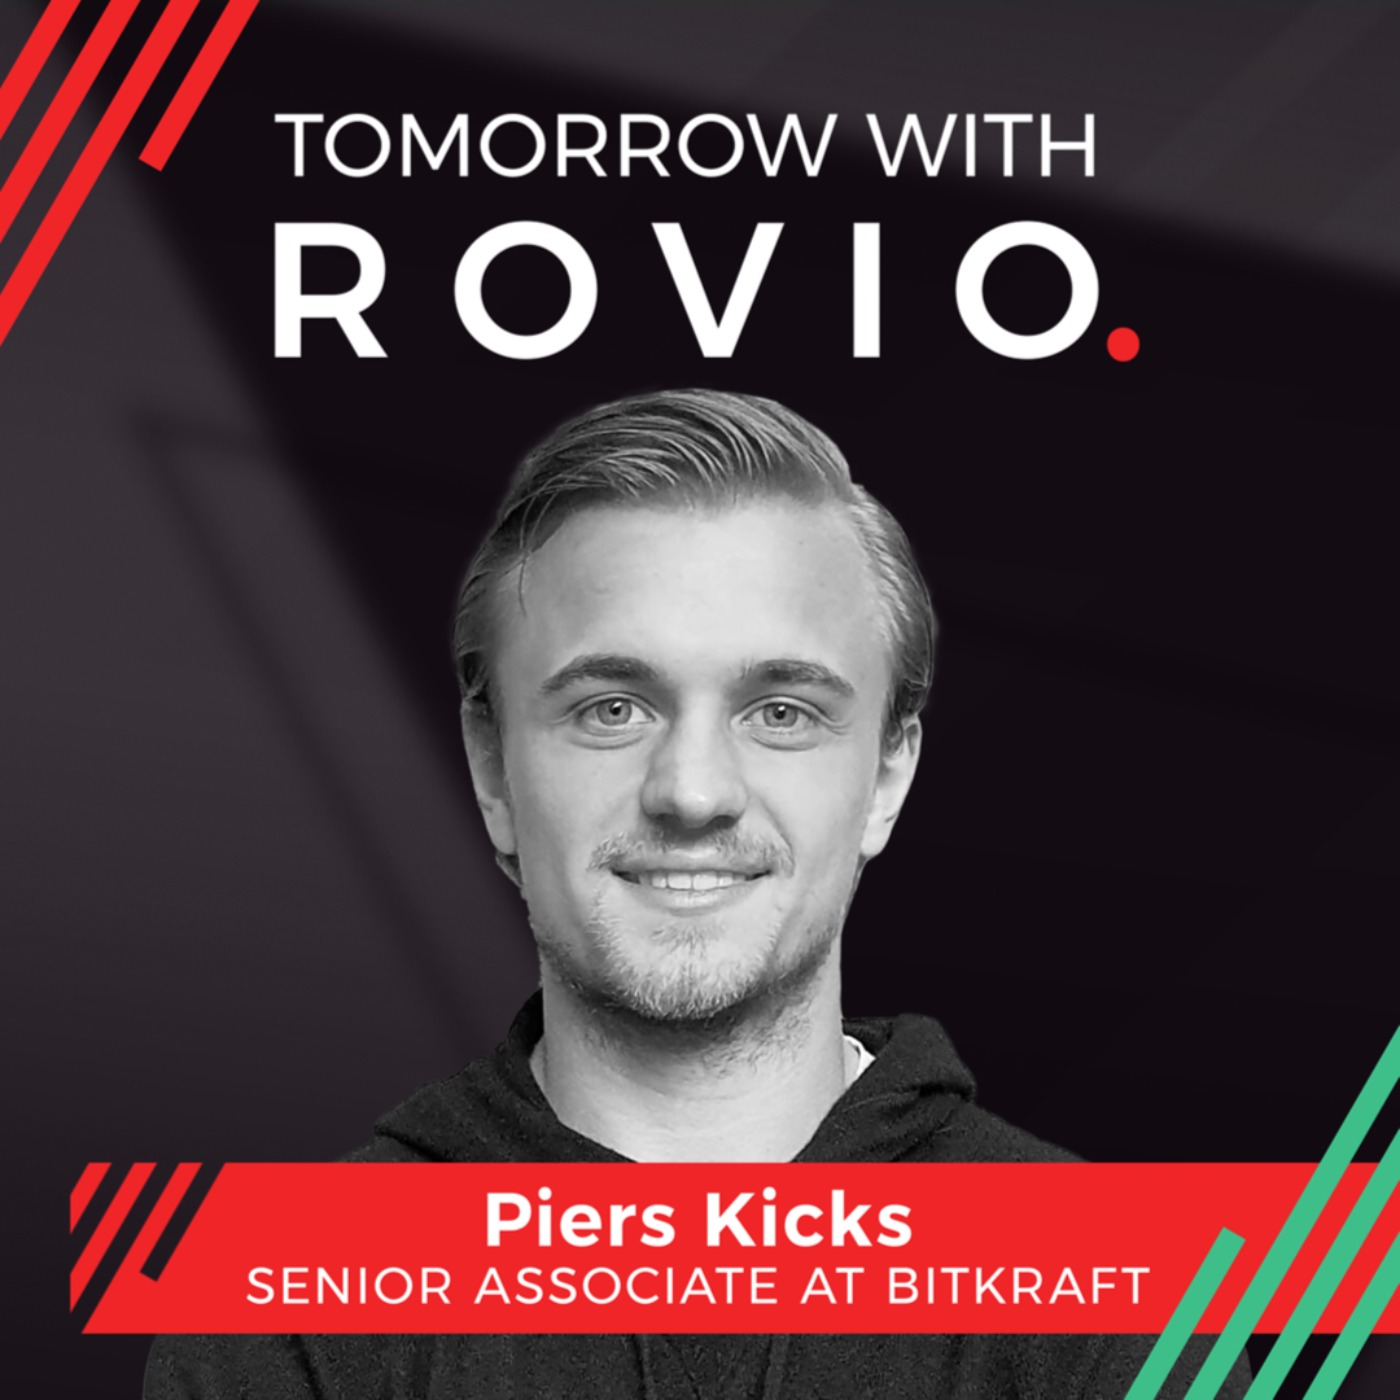 Piers Kicks - Senior Associate at Bitkraft